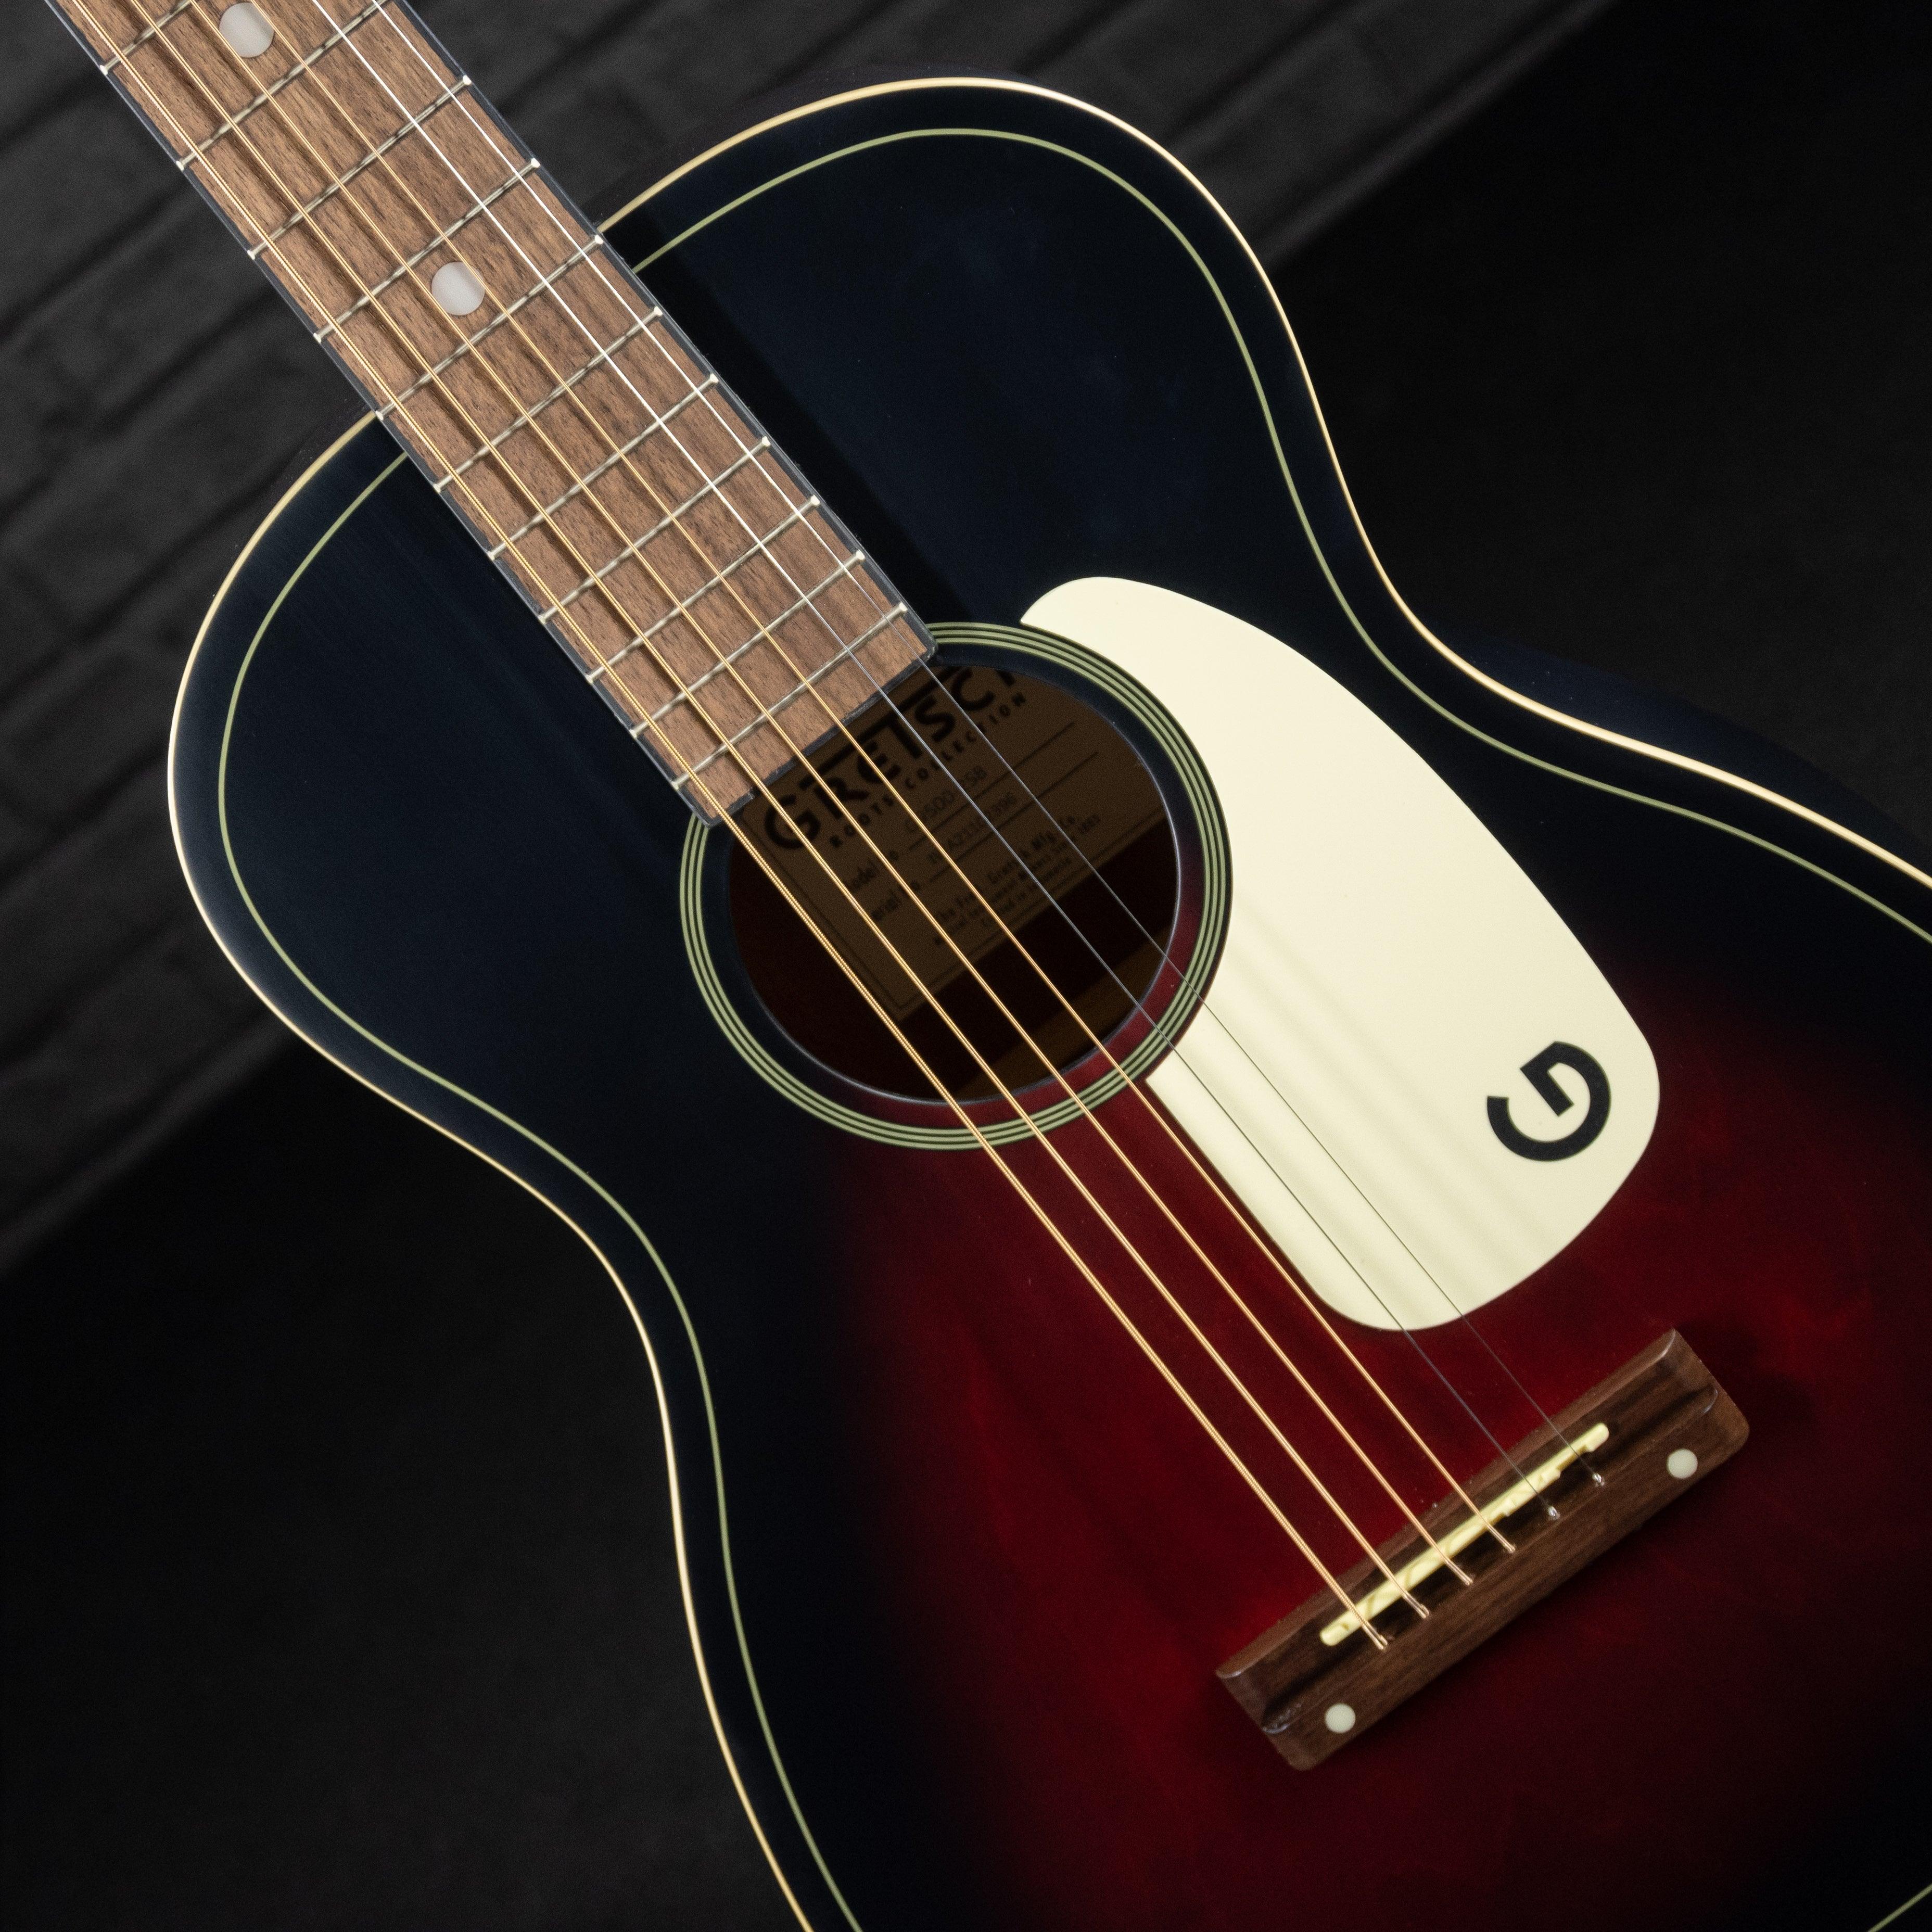 Gretsch G9500 Jim Dandy Acoustic Guitar (Two Color Sunburst) - Impulse Music Co.